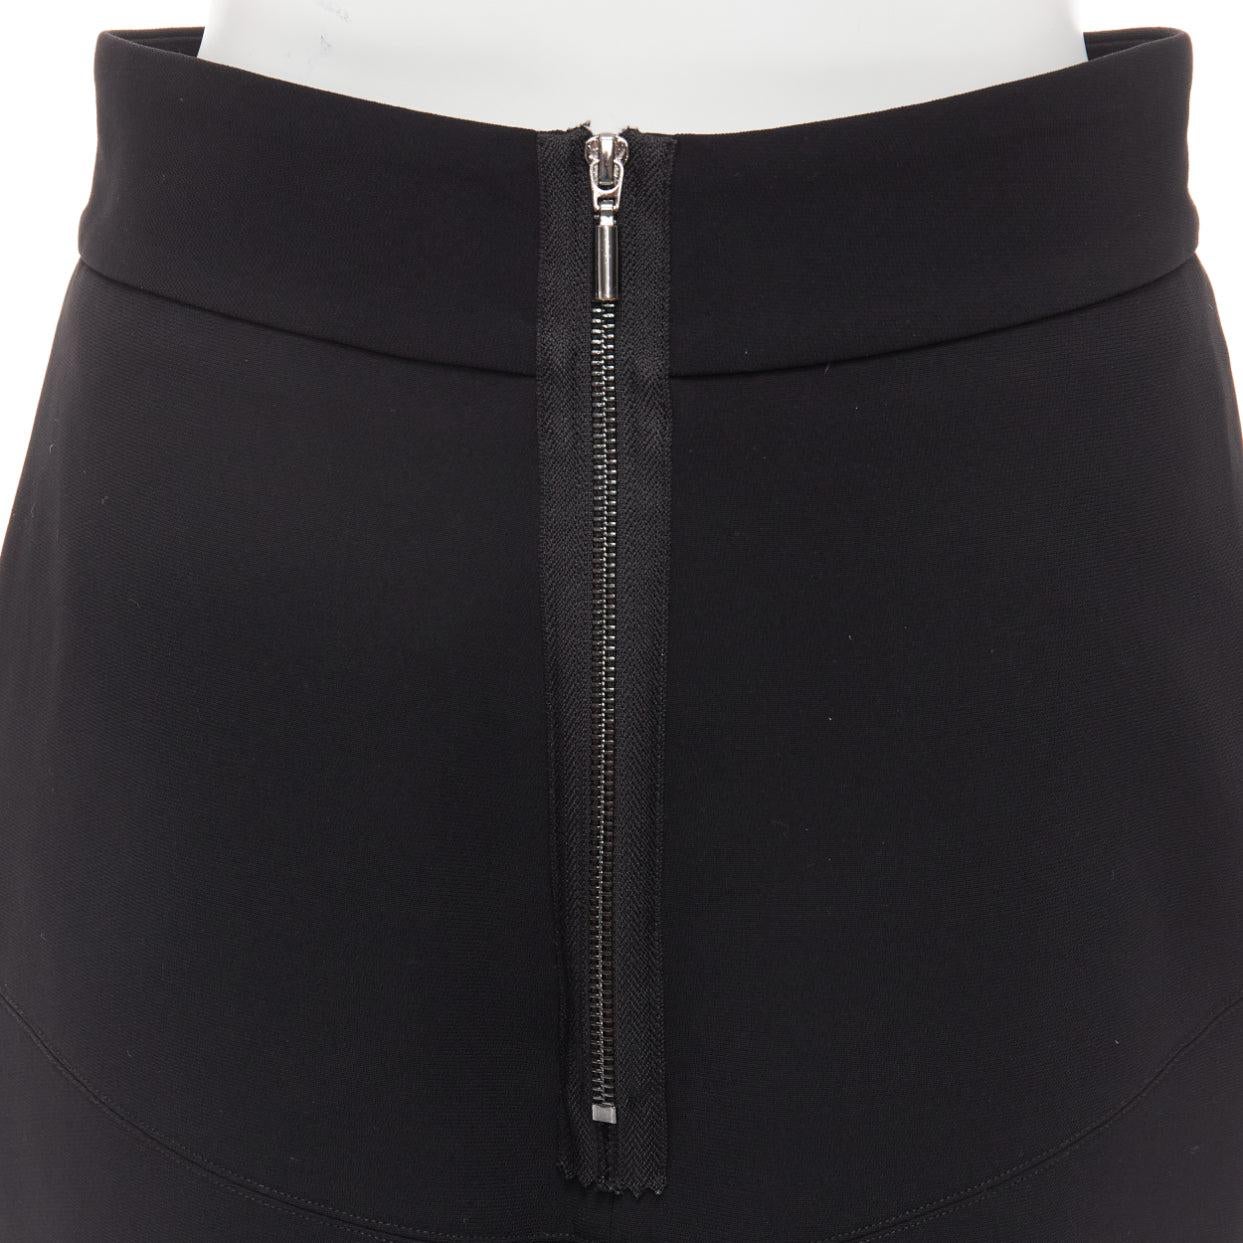 MATICEVSKI 2016 Predator black minimal front slit flare flute skirt AU10 L For Sale 2